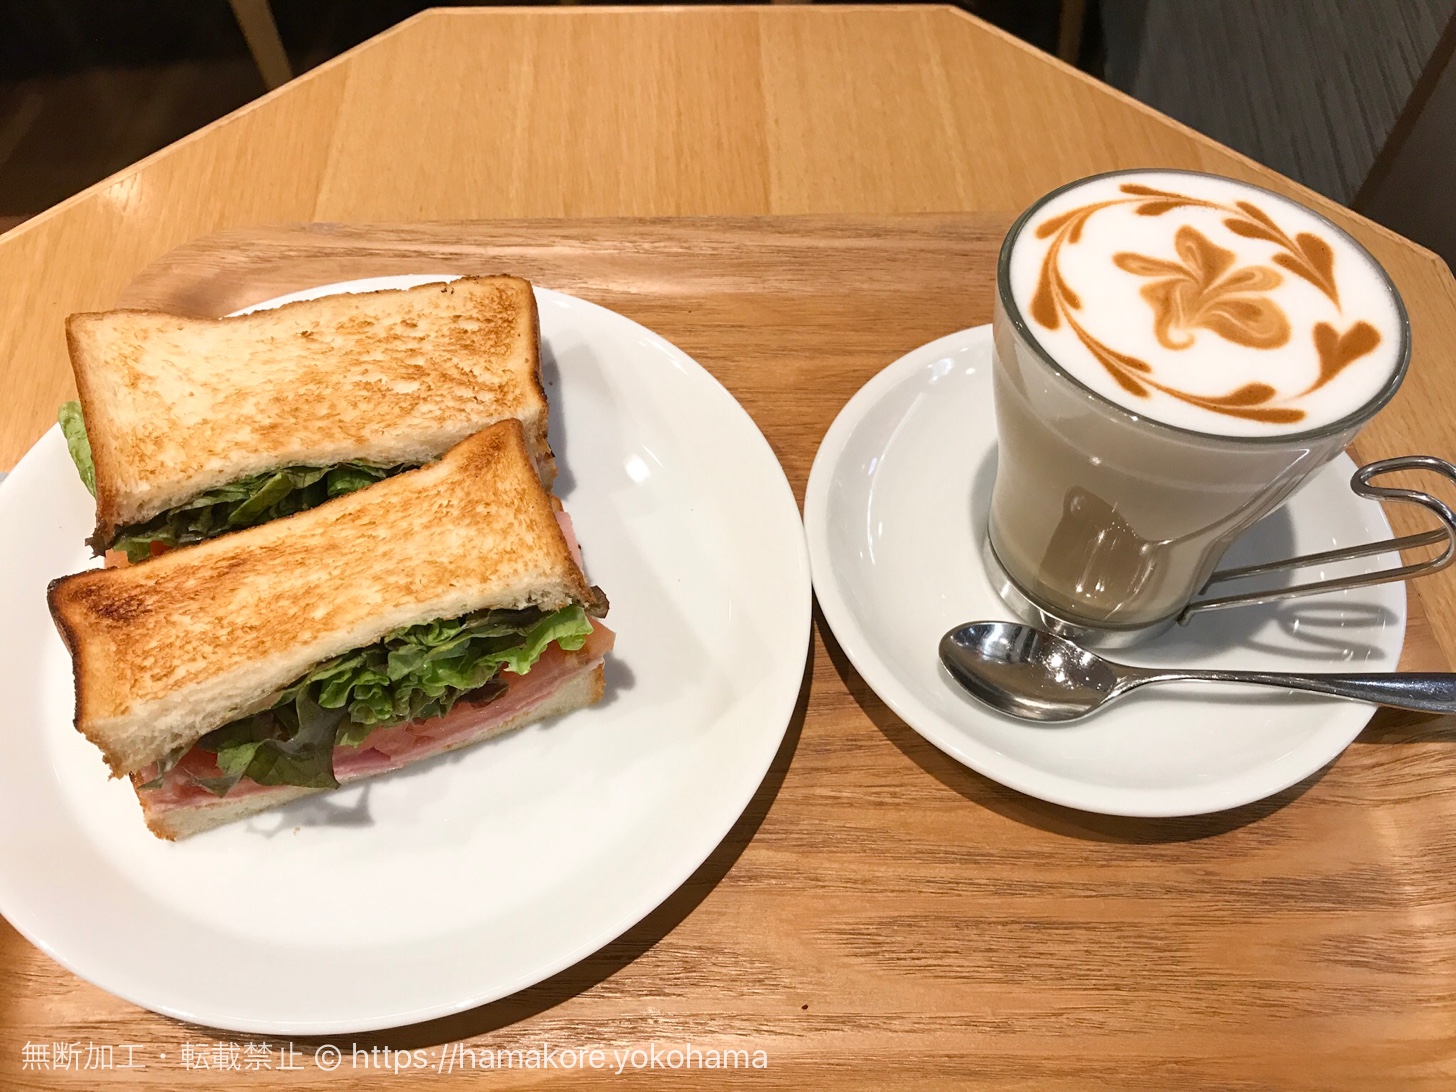 桜木町駅直結の電源カフェ「カフェ レクセル」で朝食を食べてきた！